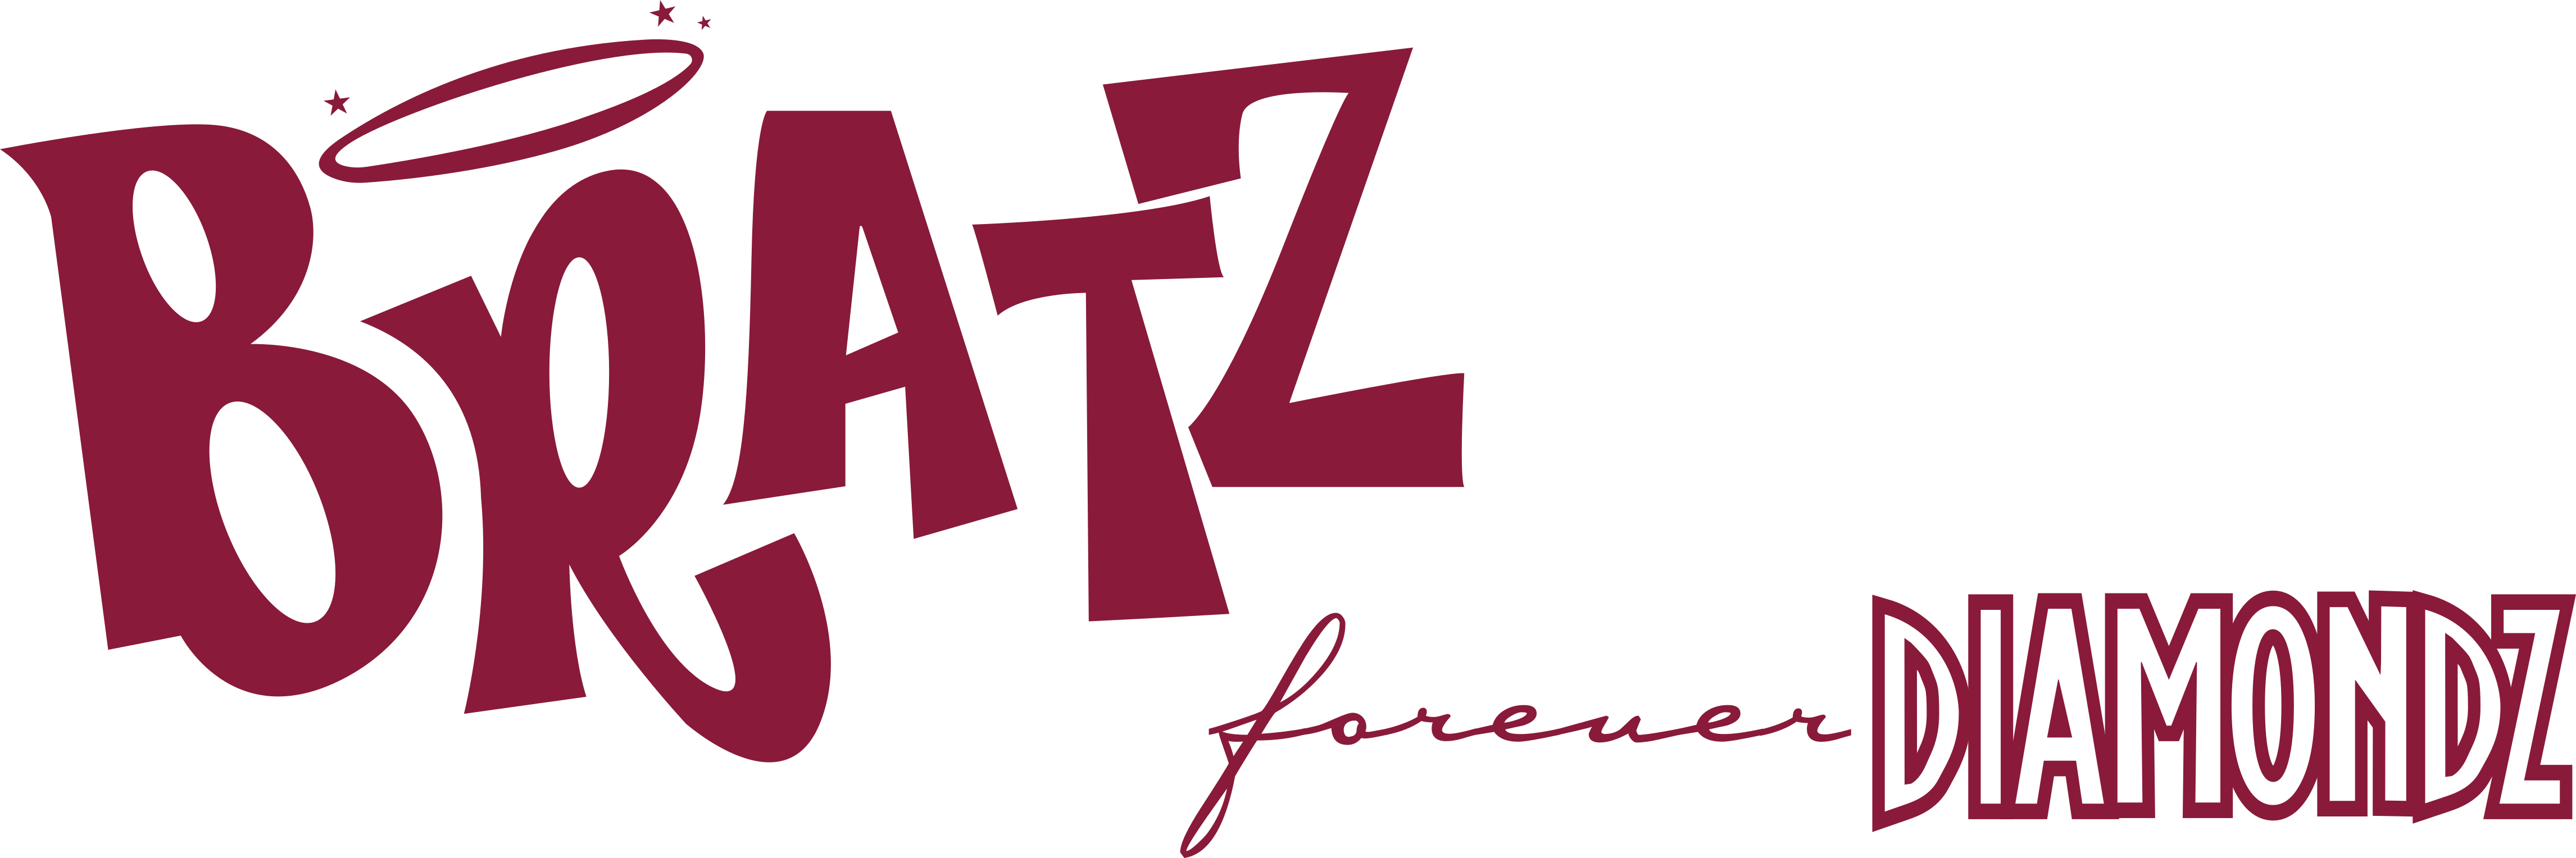 Page title: Bratz Forever Diamondz